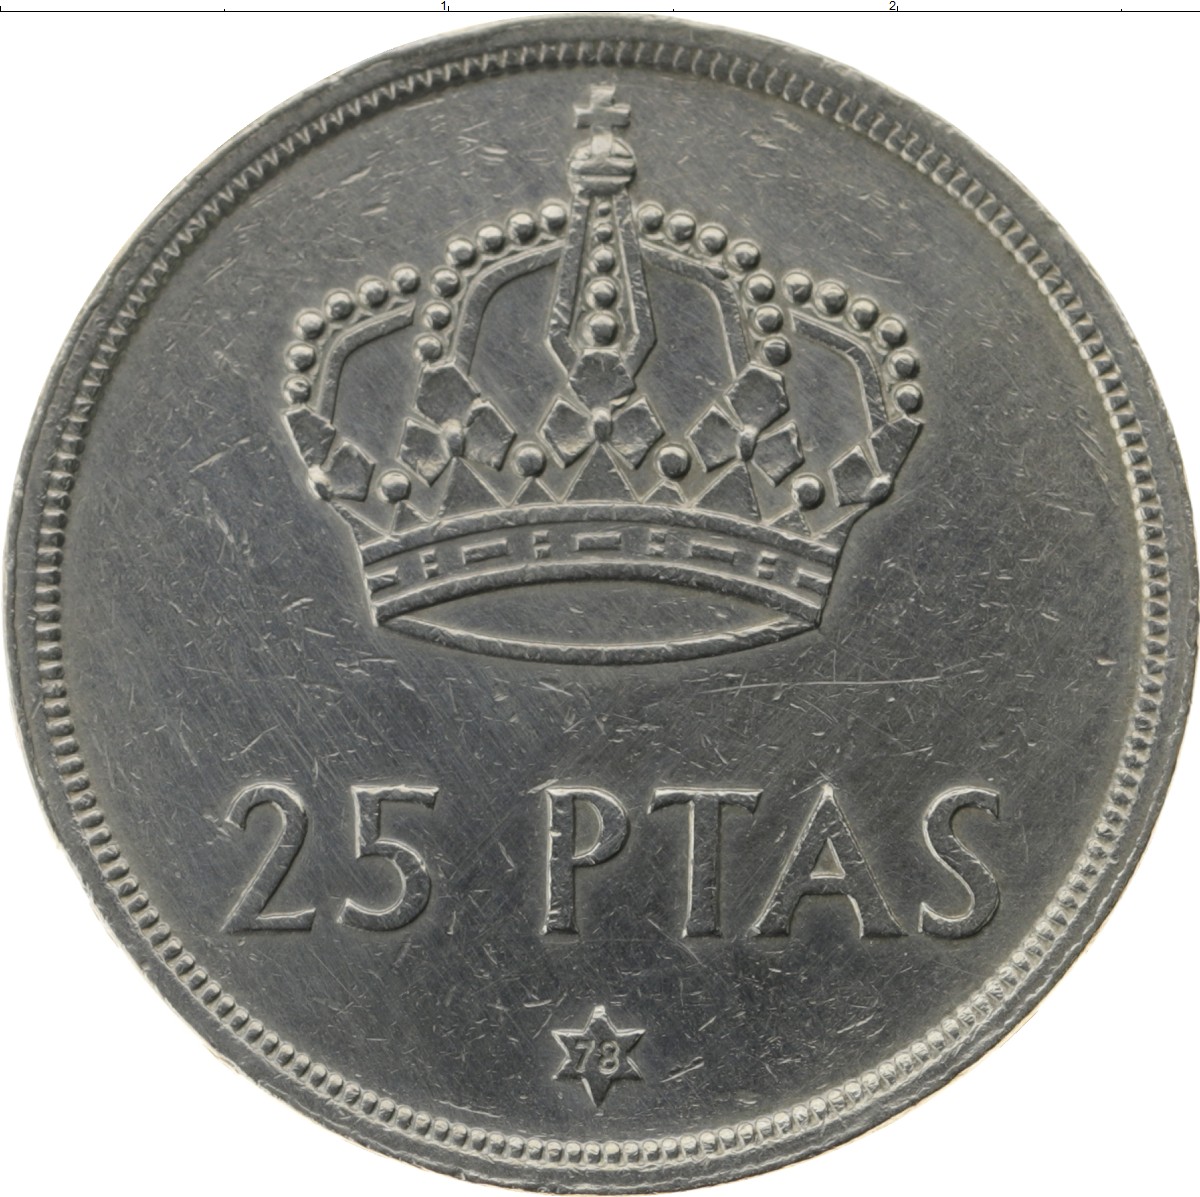 71 15 25. 1 Птас 1982 Испания. Монета 25 птас. 5 Птас 1982. Испания 25 песет 1999.